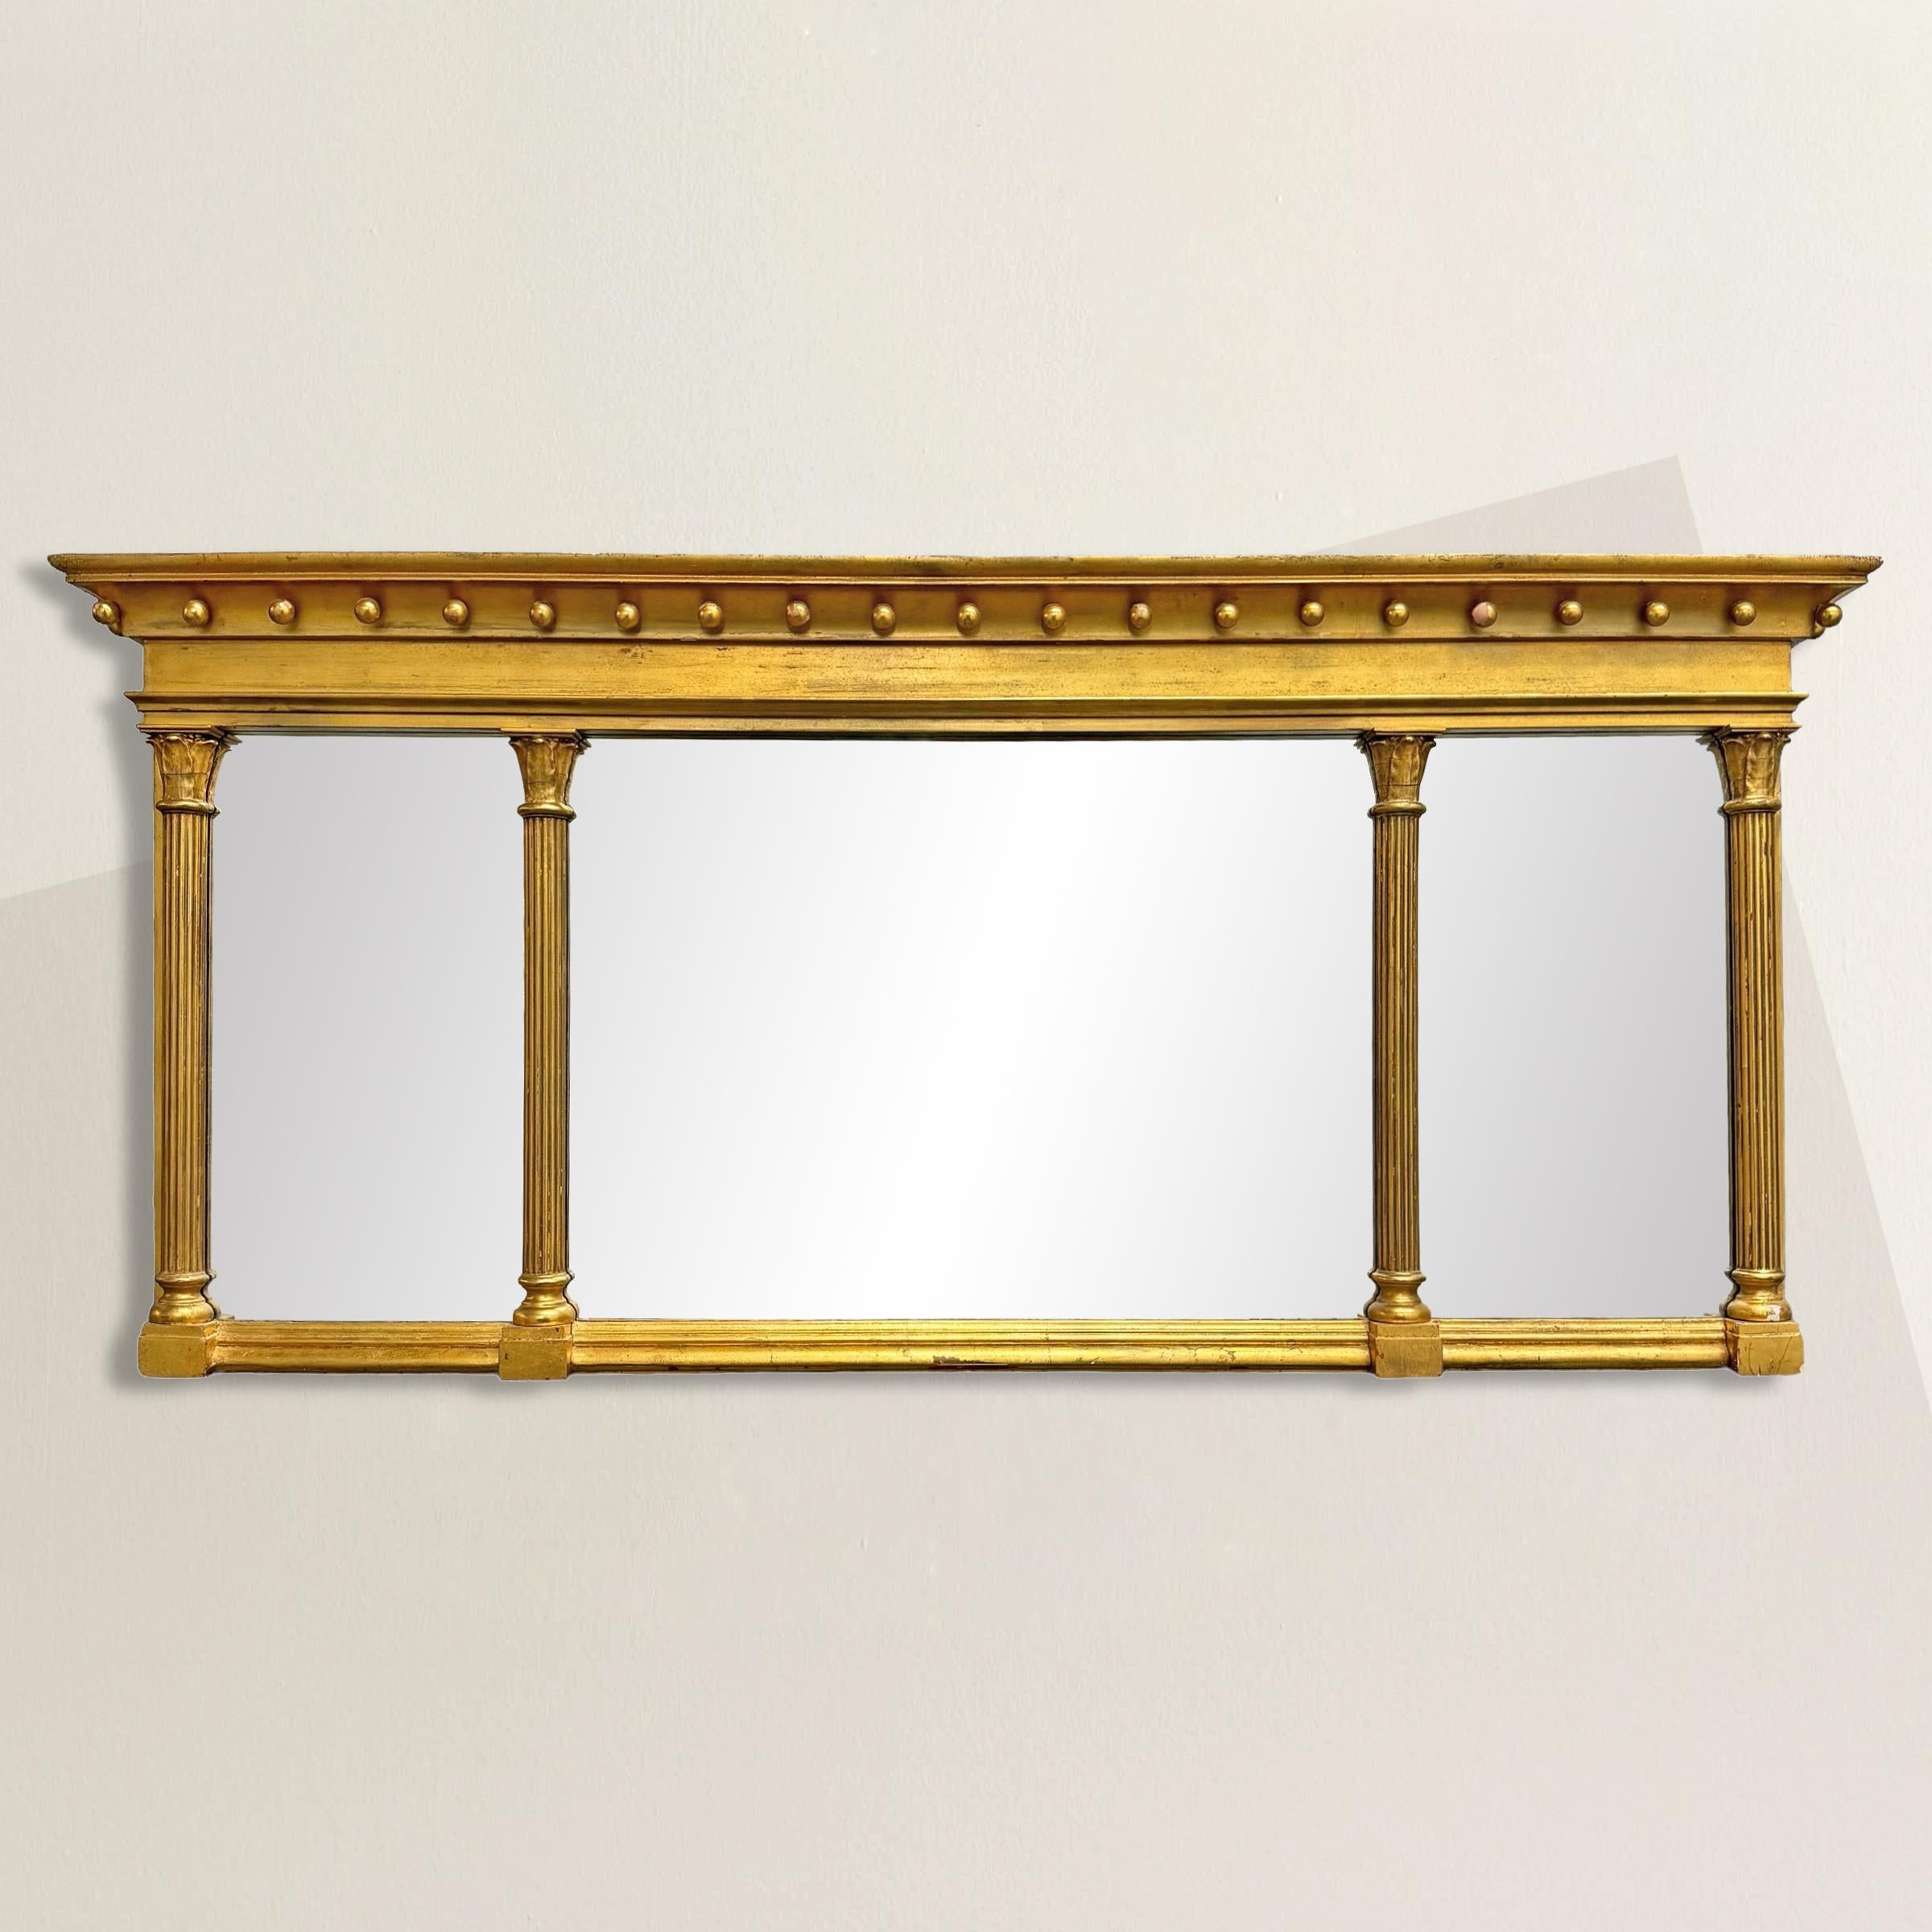 Ce miroir en bois doré de style fédéral américain du XIXe siècle est un exemple typique de l'élégance et de la symétrie qui définissent l'esthétique du design fédéral. Son cadre, orné de colonnes corinthiennes stylisées, soutient un entablement